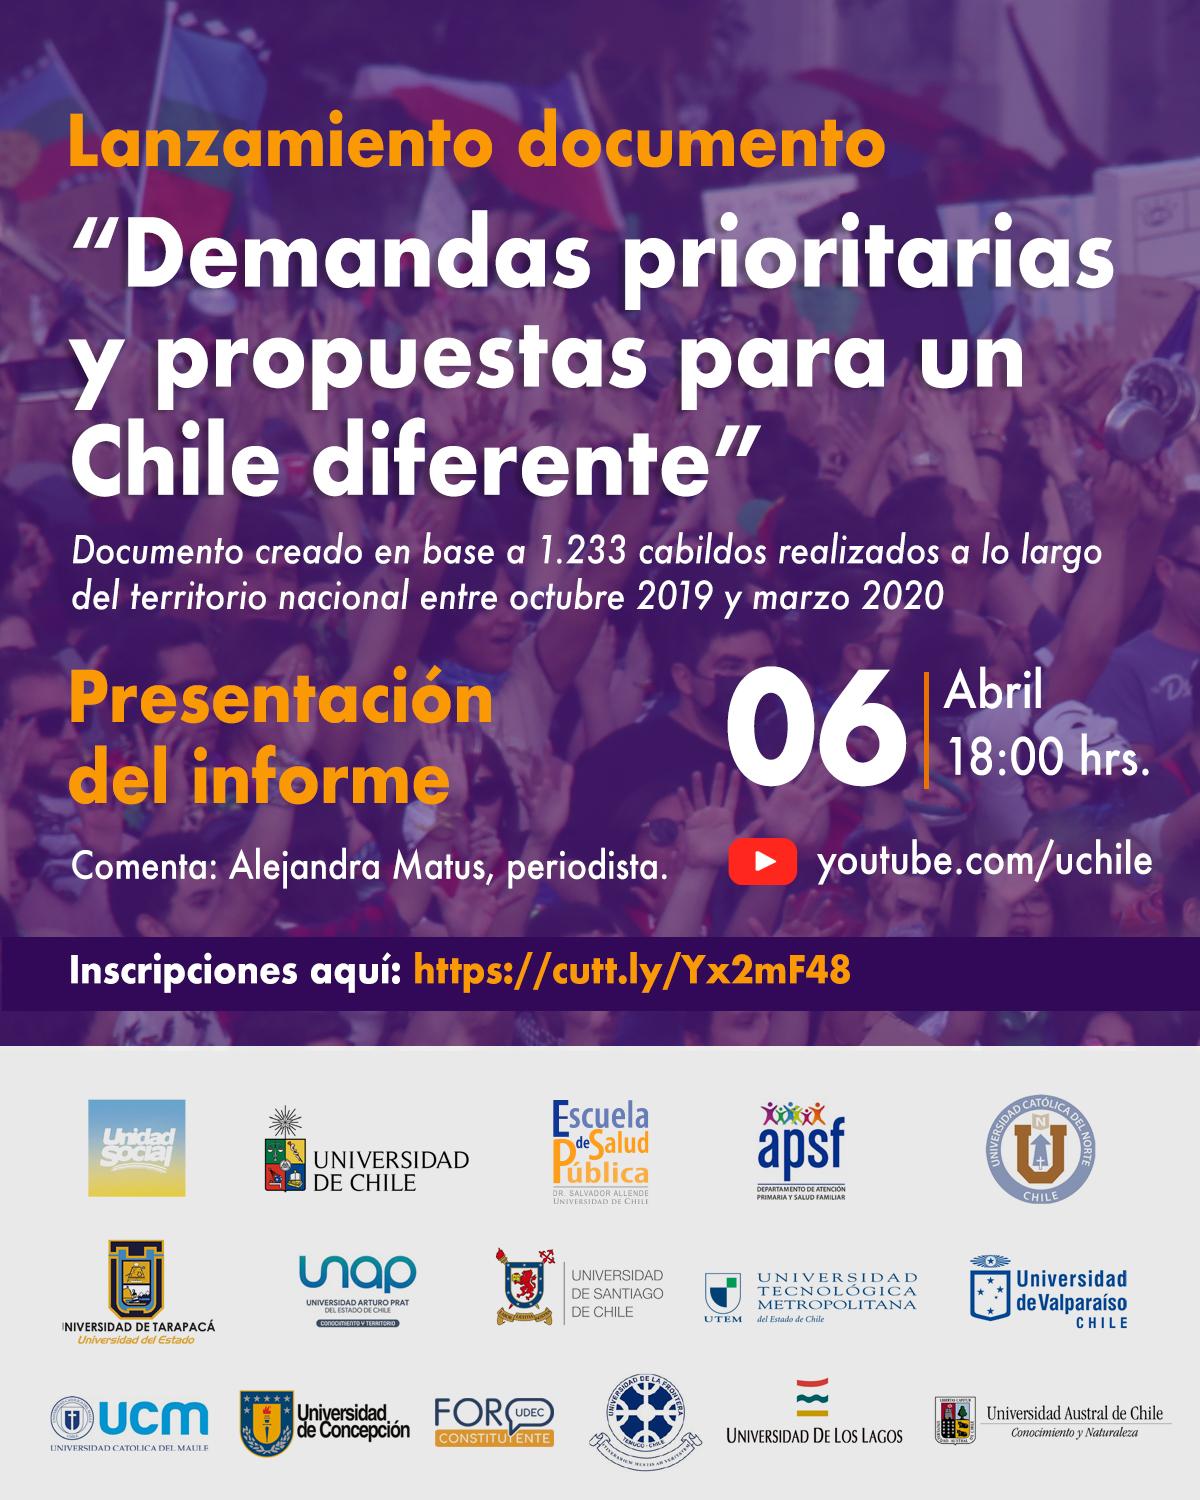 Presentación martes 06 de marzo a partir de las 18:00hr en el canal de Youtube de la Universidad de Chile y será comentado por la destacada periodista Alejandra Matus.